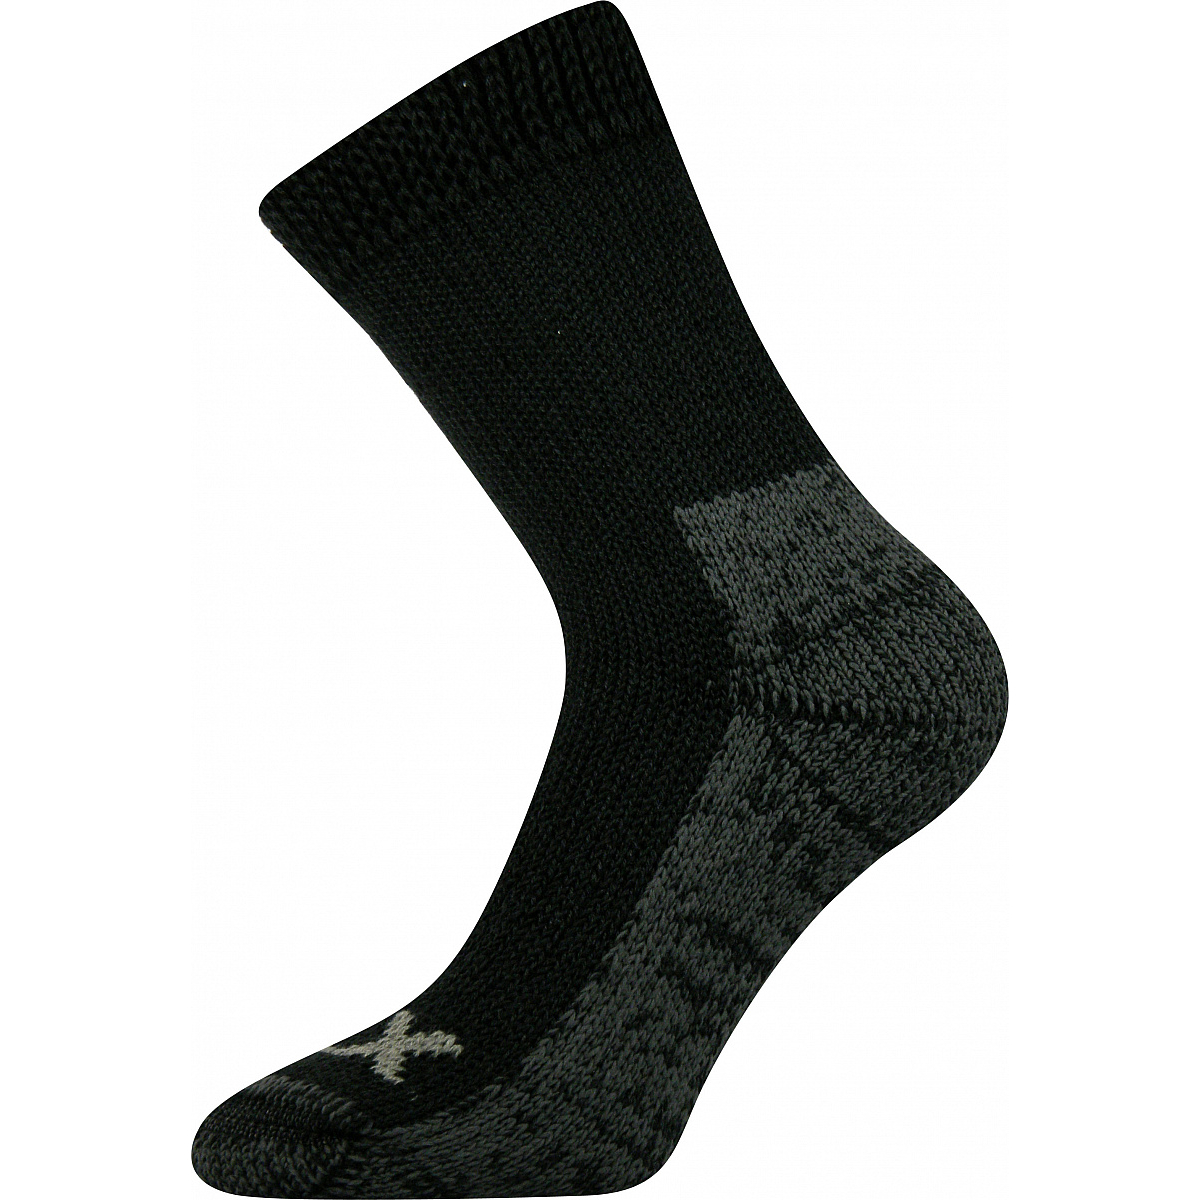 Extra teplé vlněné ponožky Voxx Alpin - černé-šedé, 43-46